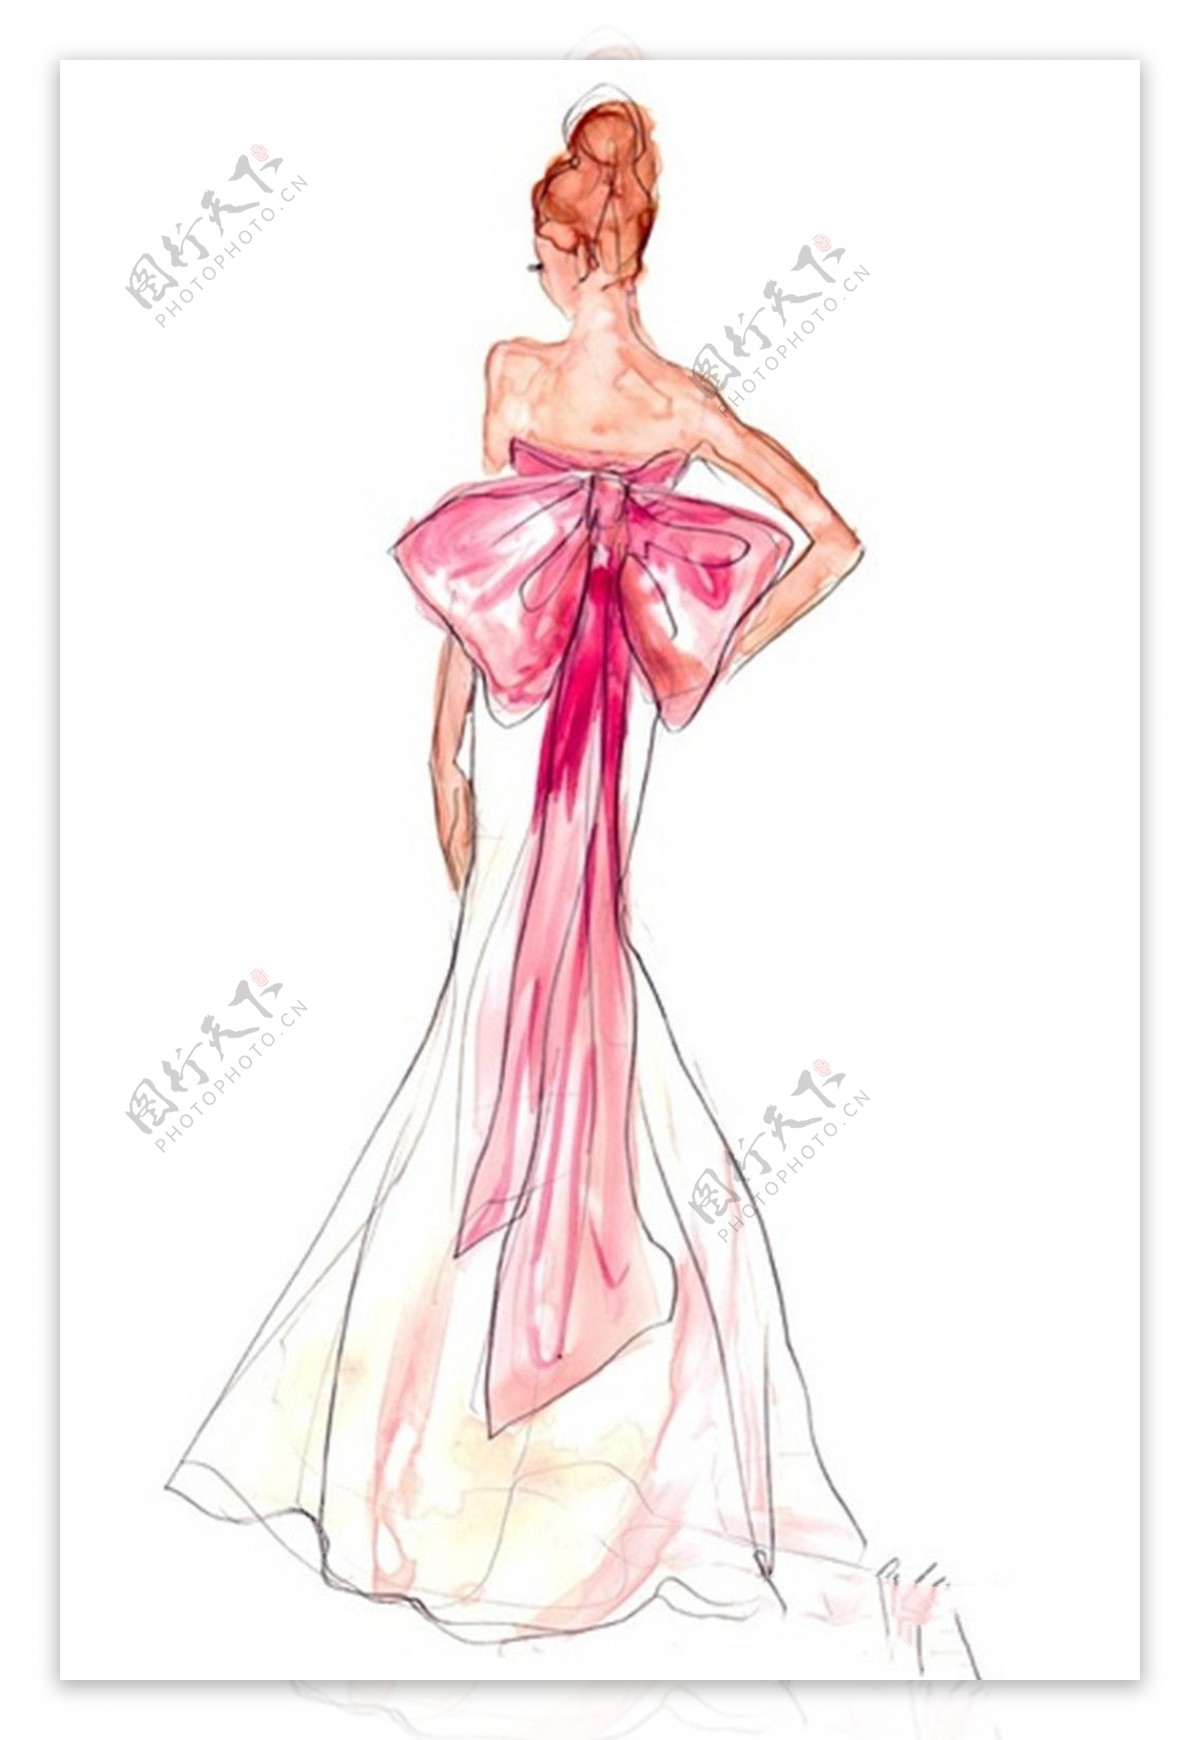 粉色蝴蝶结抹胸裙设计图